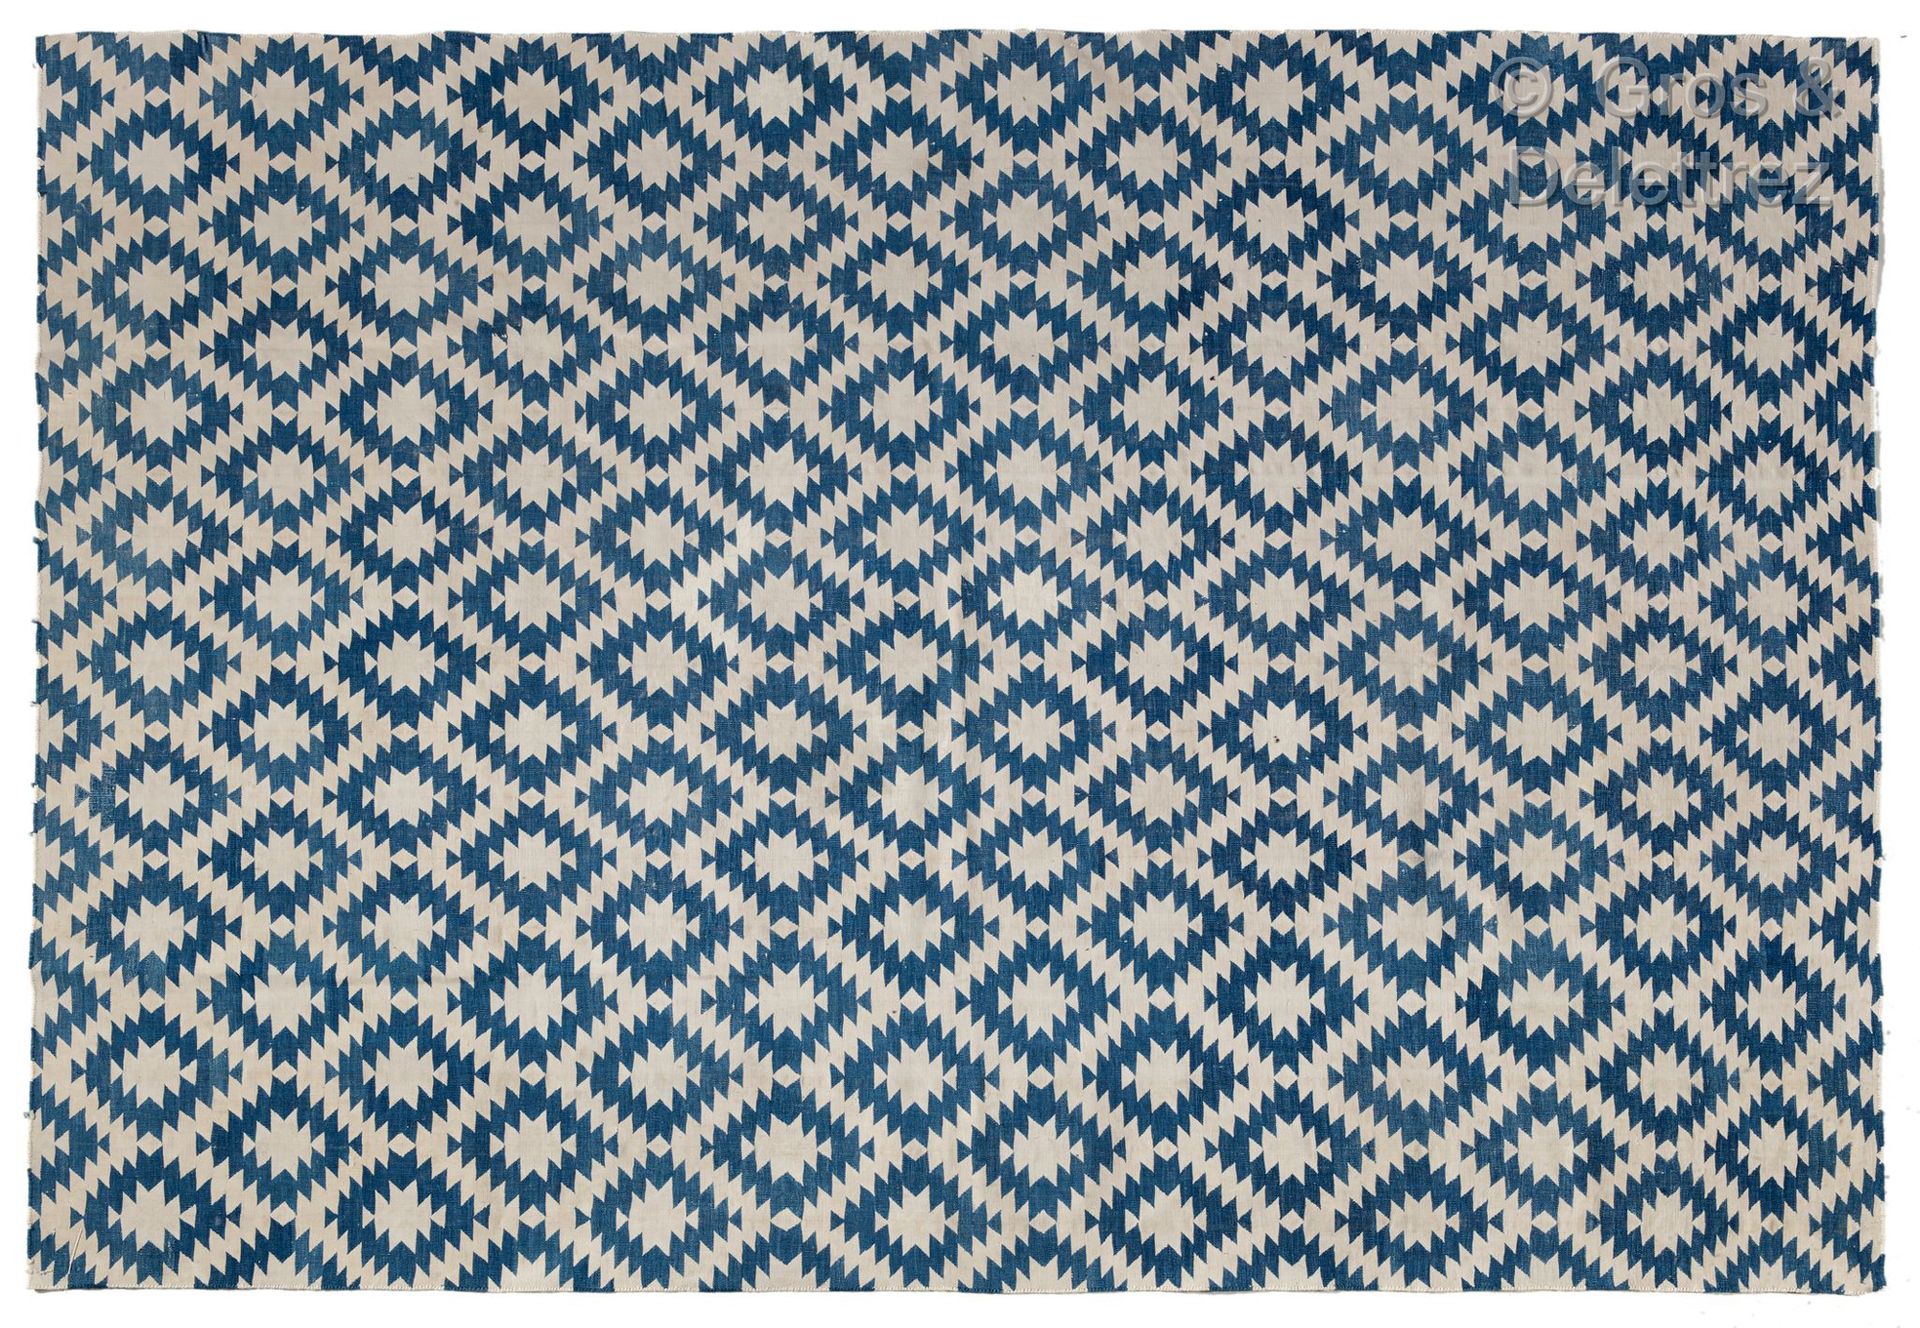 INDIAN DHURRIE Alfombra corta de lana con decoración geométrica azul y blanca.

&hellip;